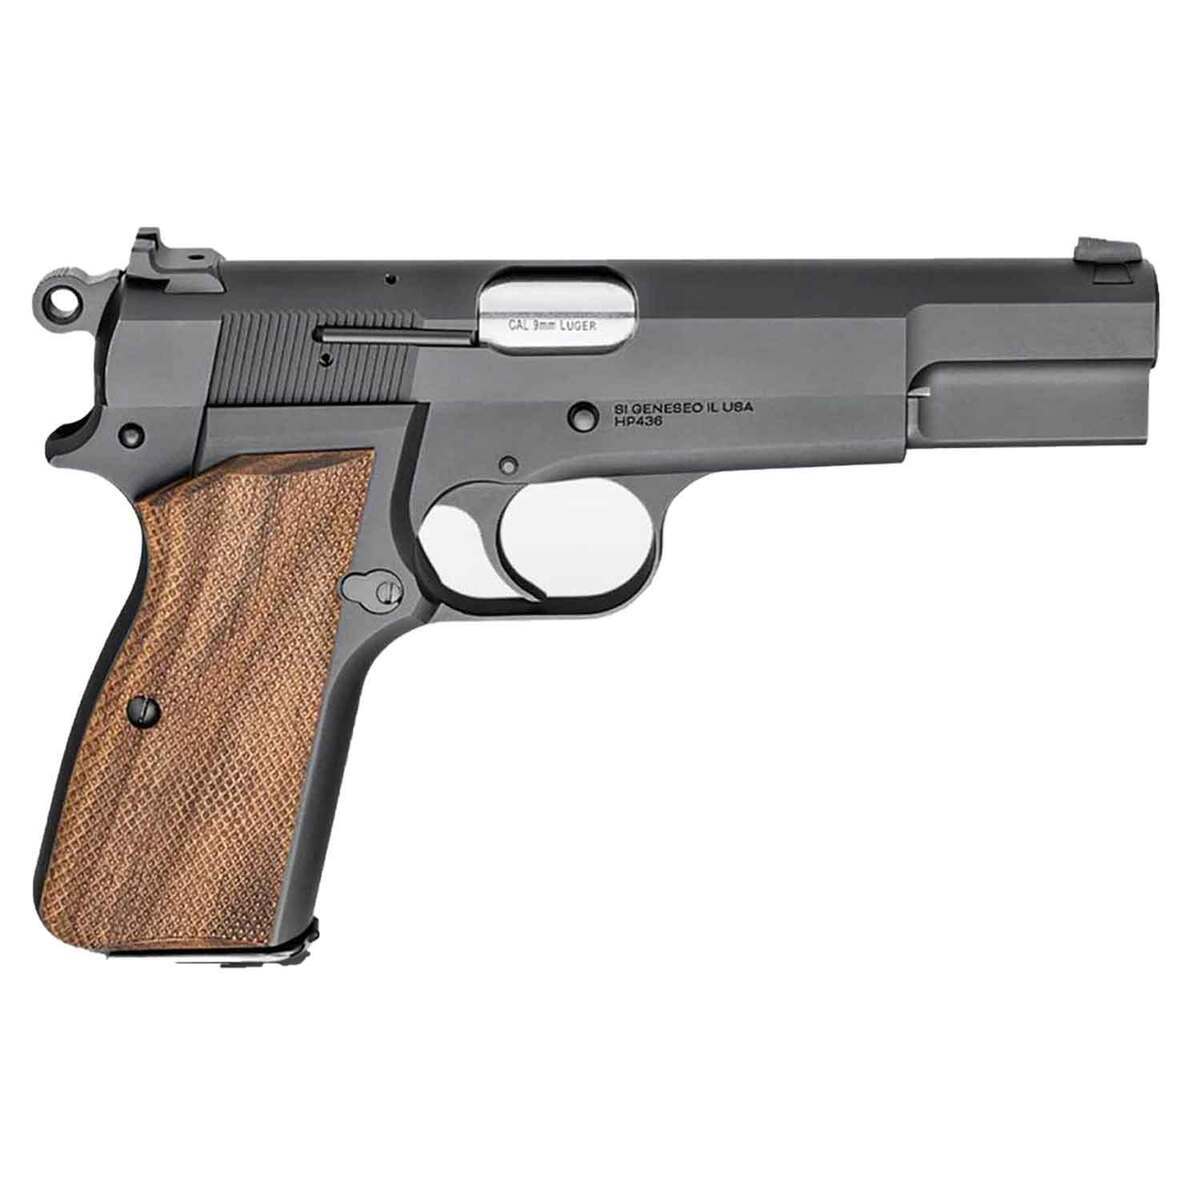 https://www.sportsmans.com/medias/springfield-armory-sa-35-9mm-luger-47in-bluedwood-pistol-151-rounds-1722514-1.jpg?context=bWFzdGVyfGltYWdlc3w2NTA2OXxpbWFnZS9qcGVnfGg4Ny9oMmEvMTA1MjE0MDQ0NzMzNzQvMTcyMjUxNC0xX2Jhc2UtY29udmVyc2lvbkZvcm1hdF8xMjAwLWNvbnZlcnNpb25Gb3JtYXR8YmFhMTczYjYwNzk3YWU5ZDkxNTVmYzZhYWViNmM5MjEyZDYxMDM3NGQ5YzIzMzgzOGJhZjQ1MWM4MGM1OGM4OQ